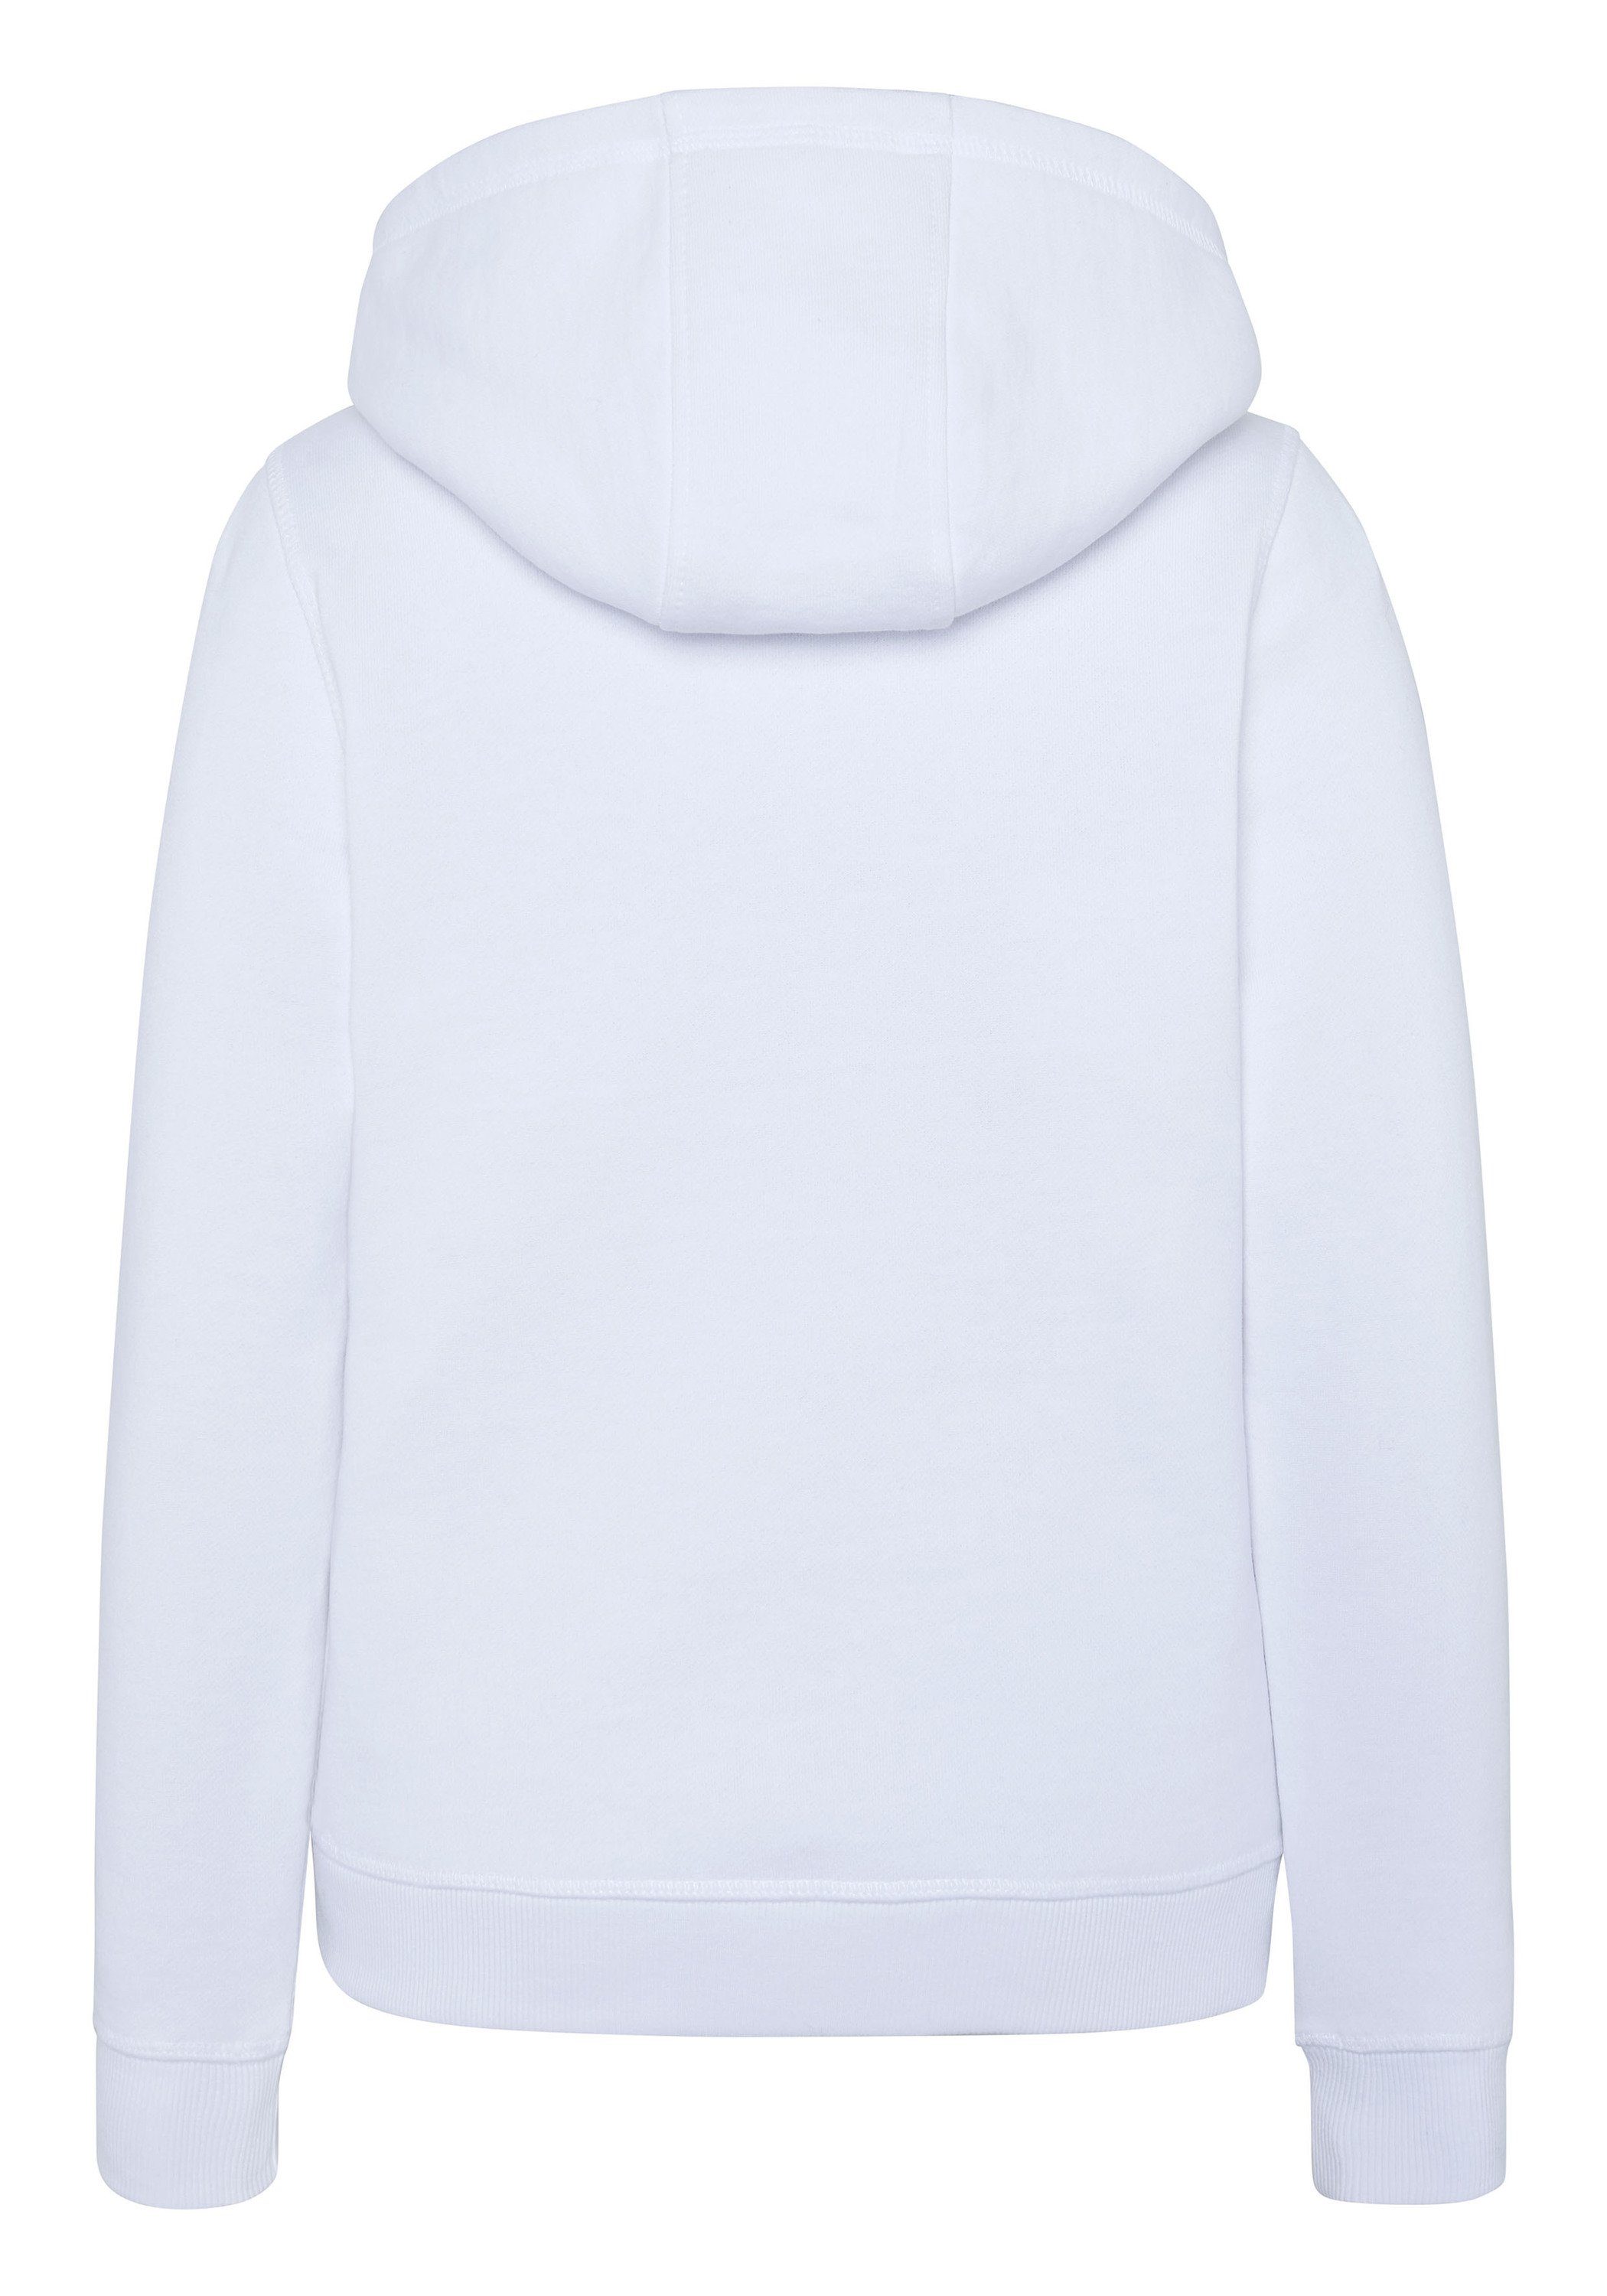 Polo Sylt Sweatshirt mit glitzerndem Label-Motiv Bright White